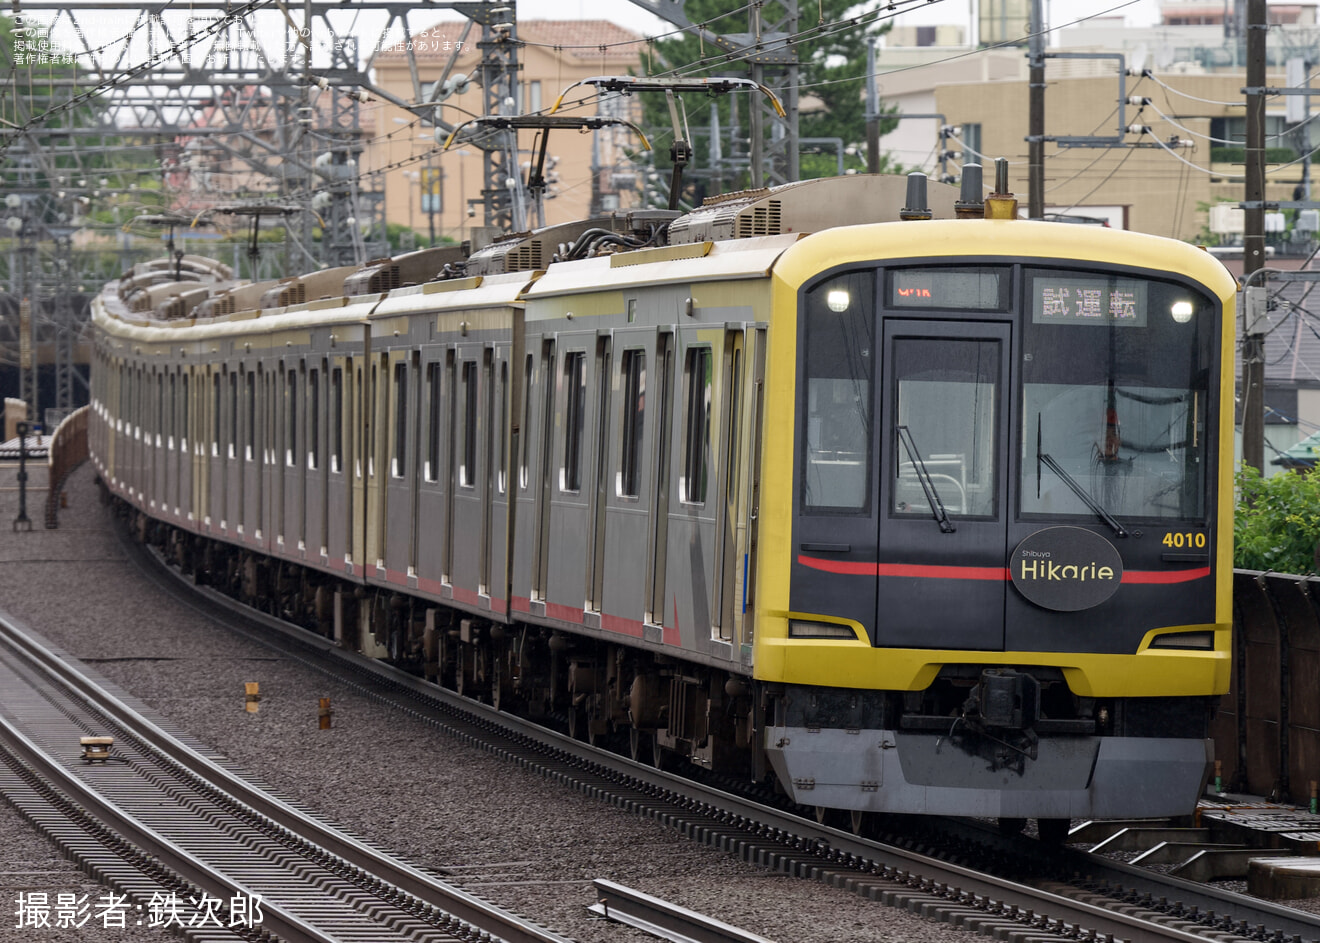 【東急】5050系4110F 「Shibuya Hikarie号」ATO調整試運転の拡大写真